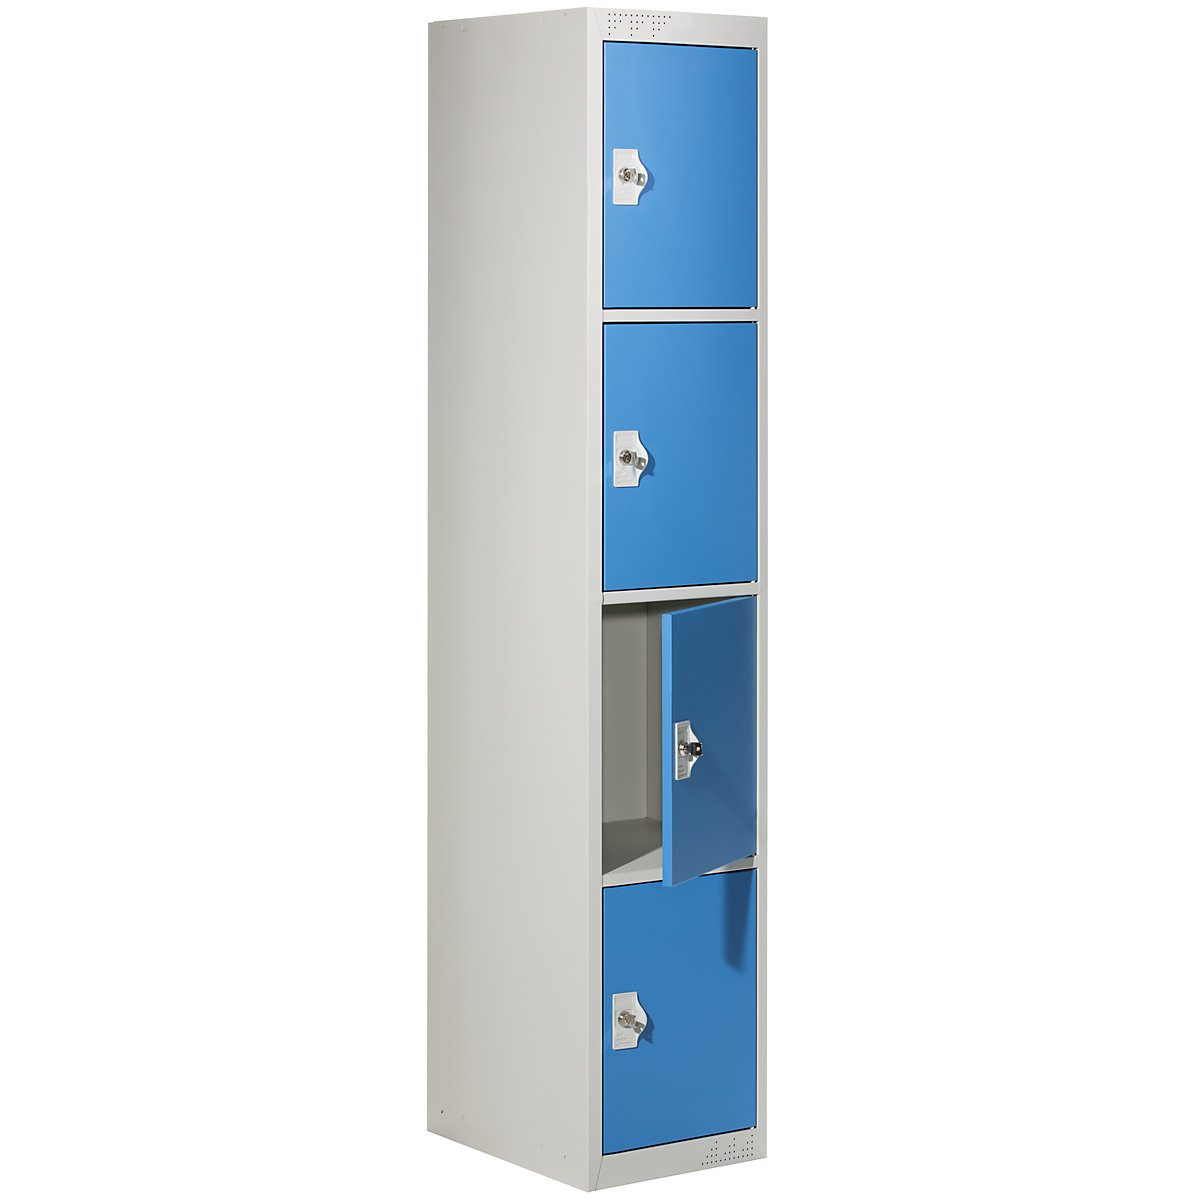 Vestiaire multicases avec 4 casiers verrouillables, h x l x p 1800 x 300 x 500 mm, gris clair / bleu clair, élément de base